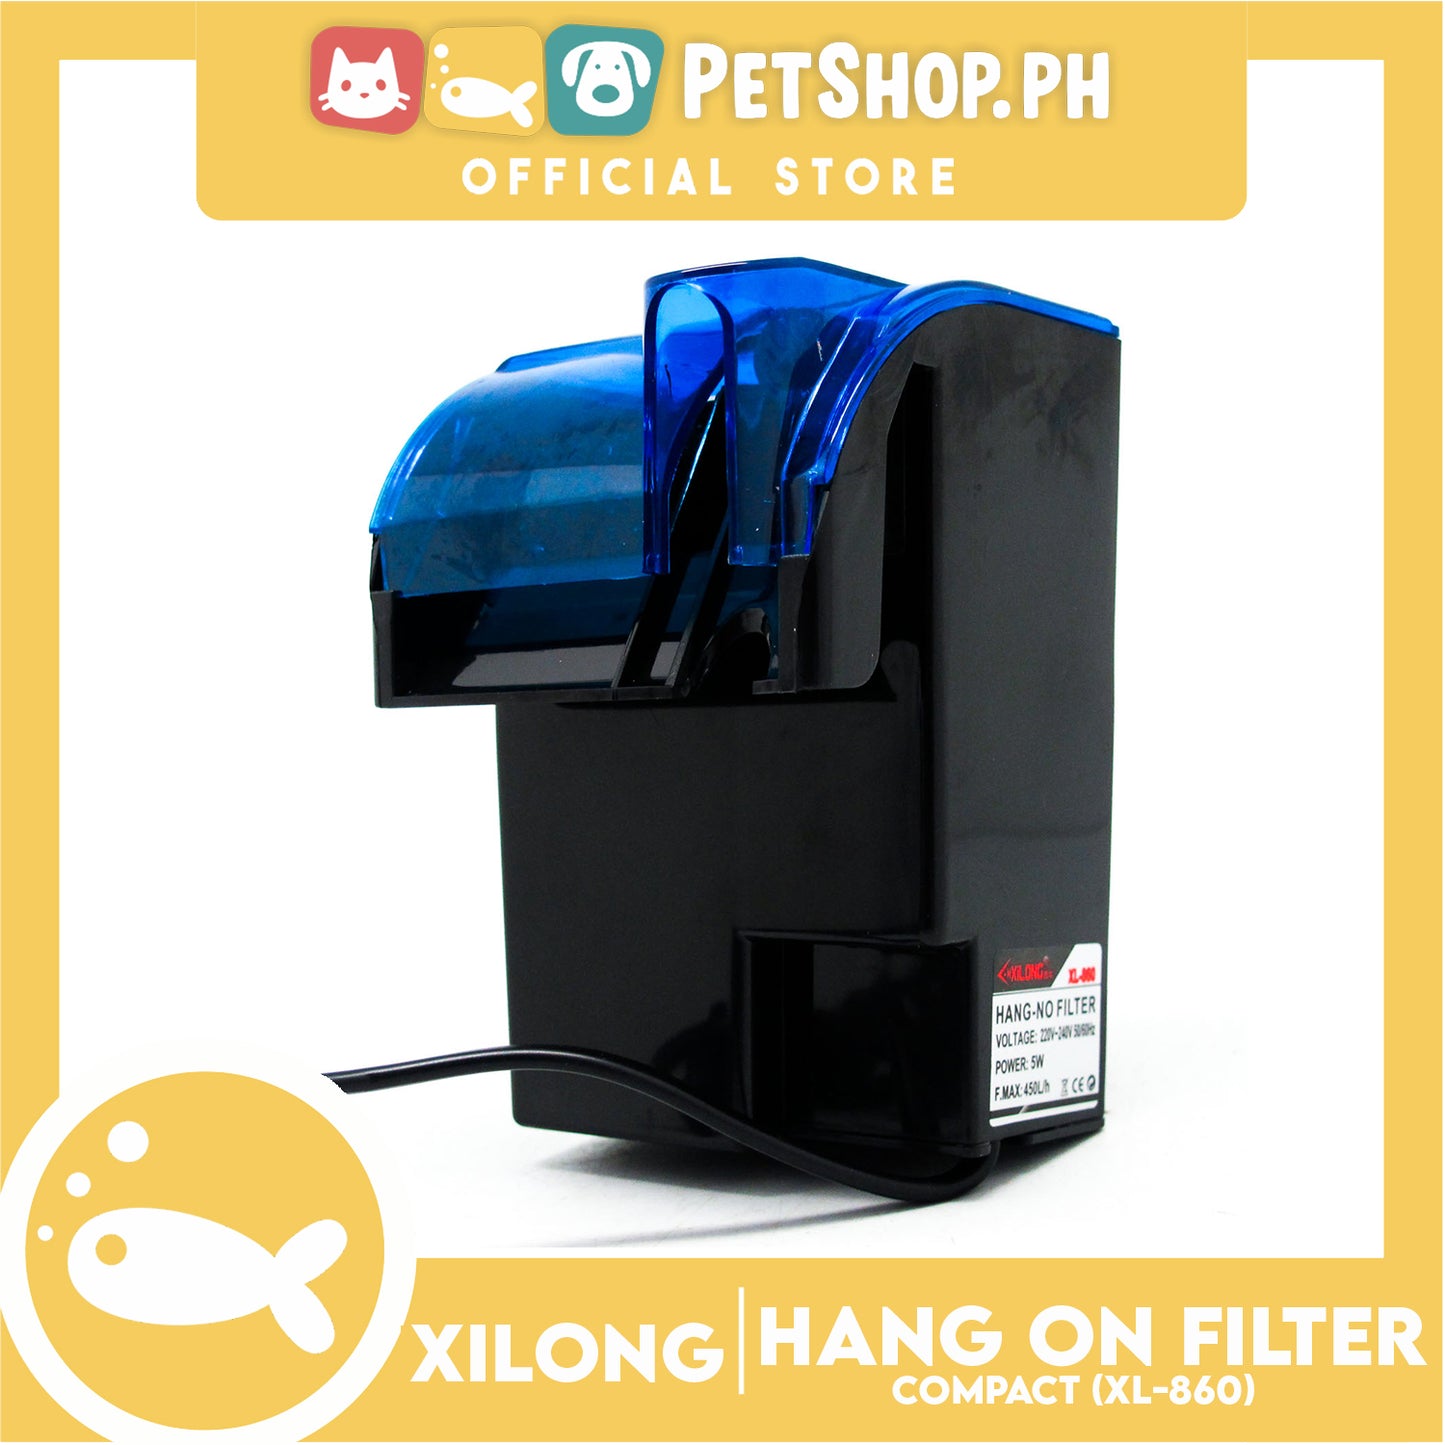 XL-860 Hangon Filter 5w